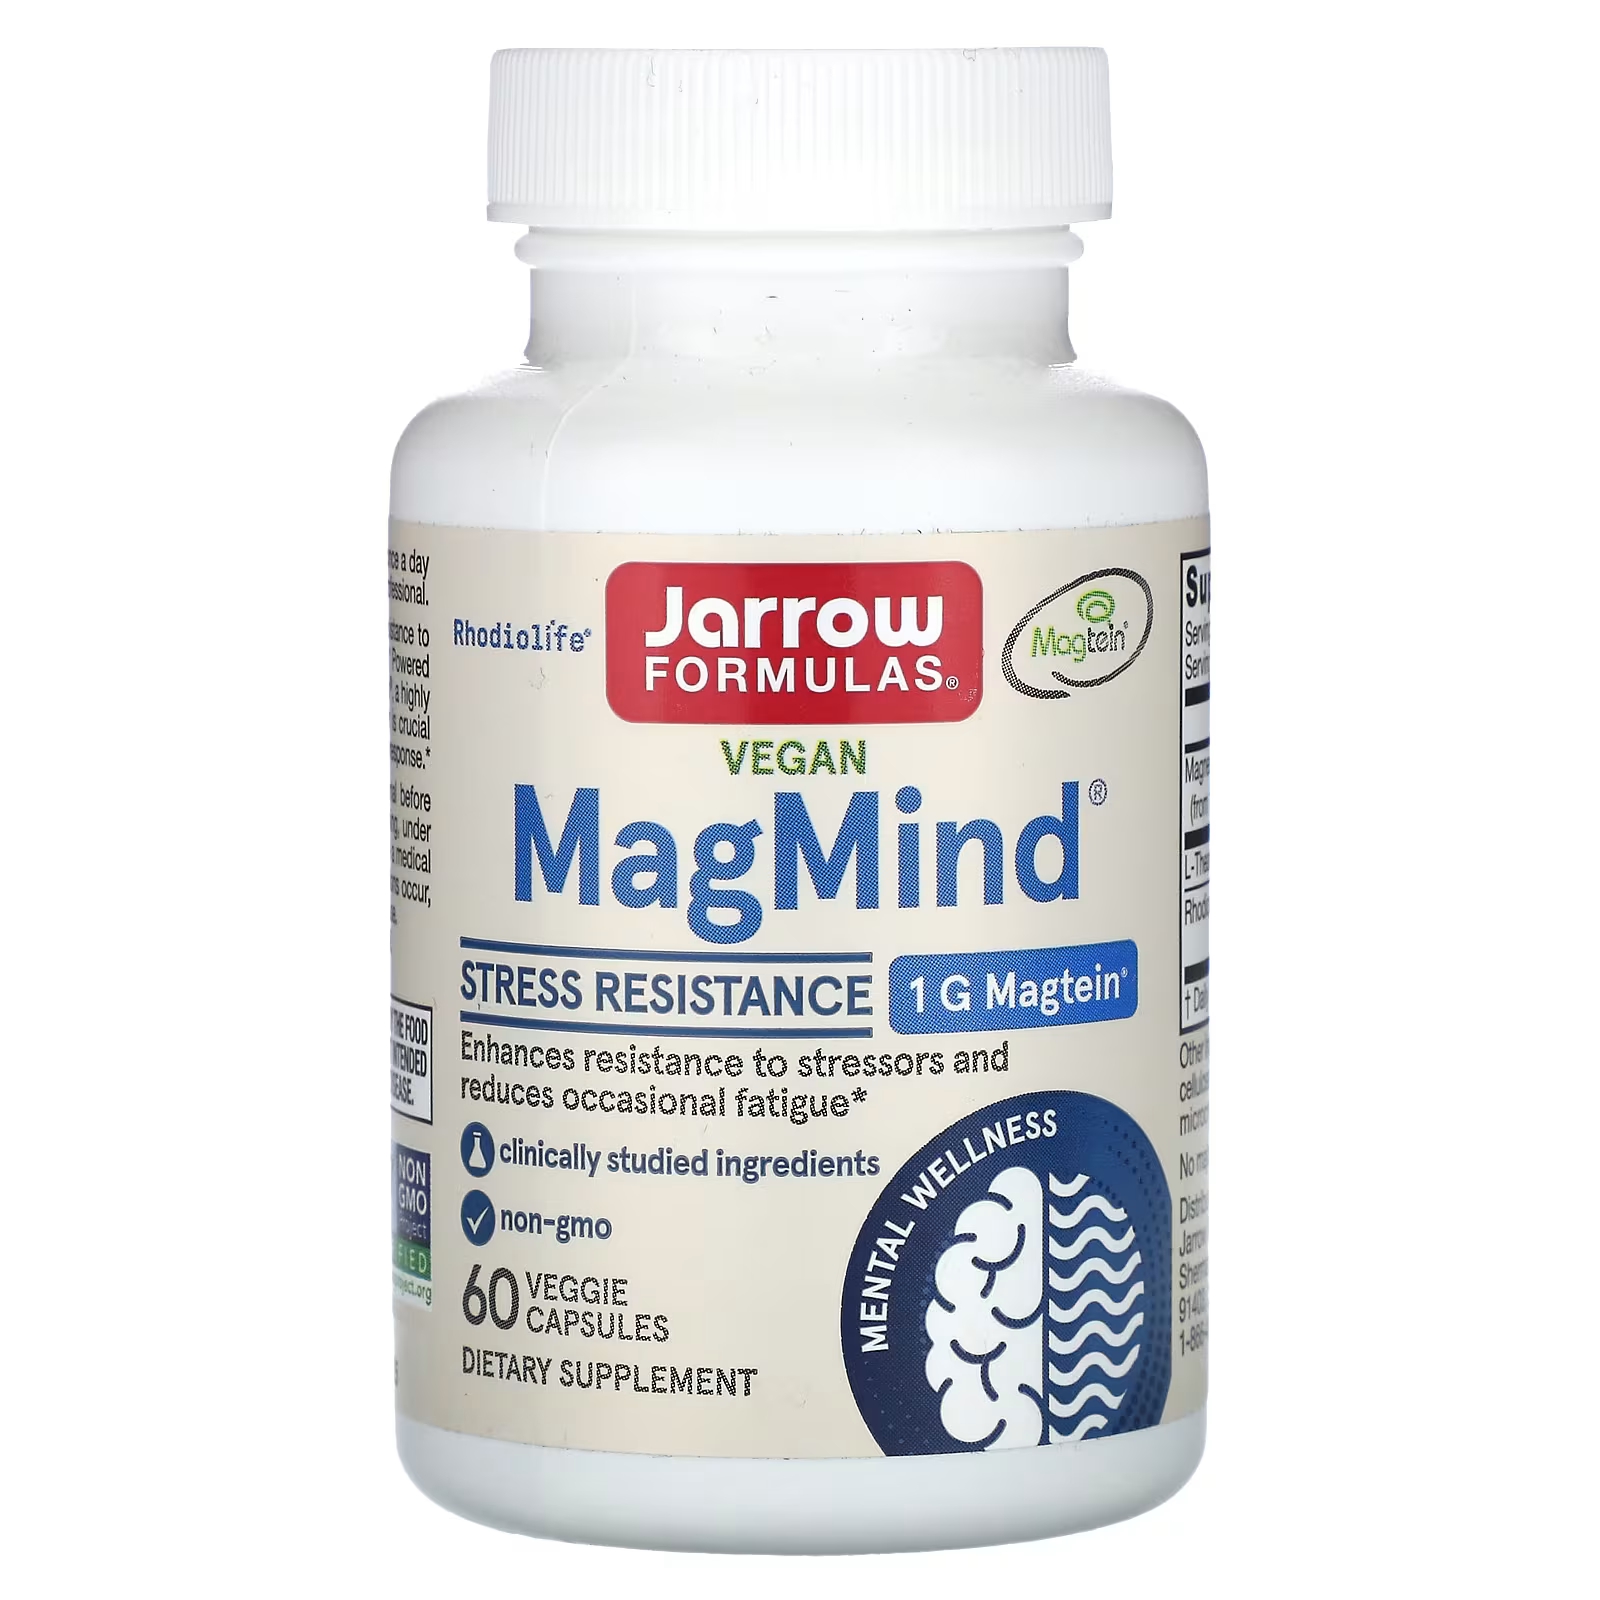 Jarrow Formulas Vegan MagMind Stress Resistance 60 растительных капсул магний magmind 90 вегетарианских капсул jarrow formulas